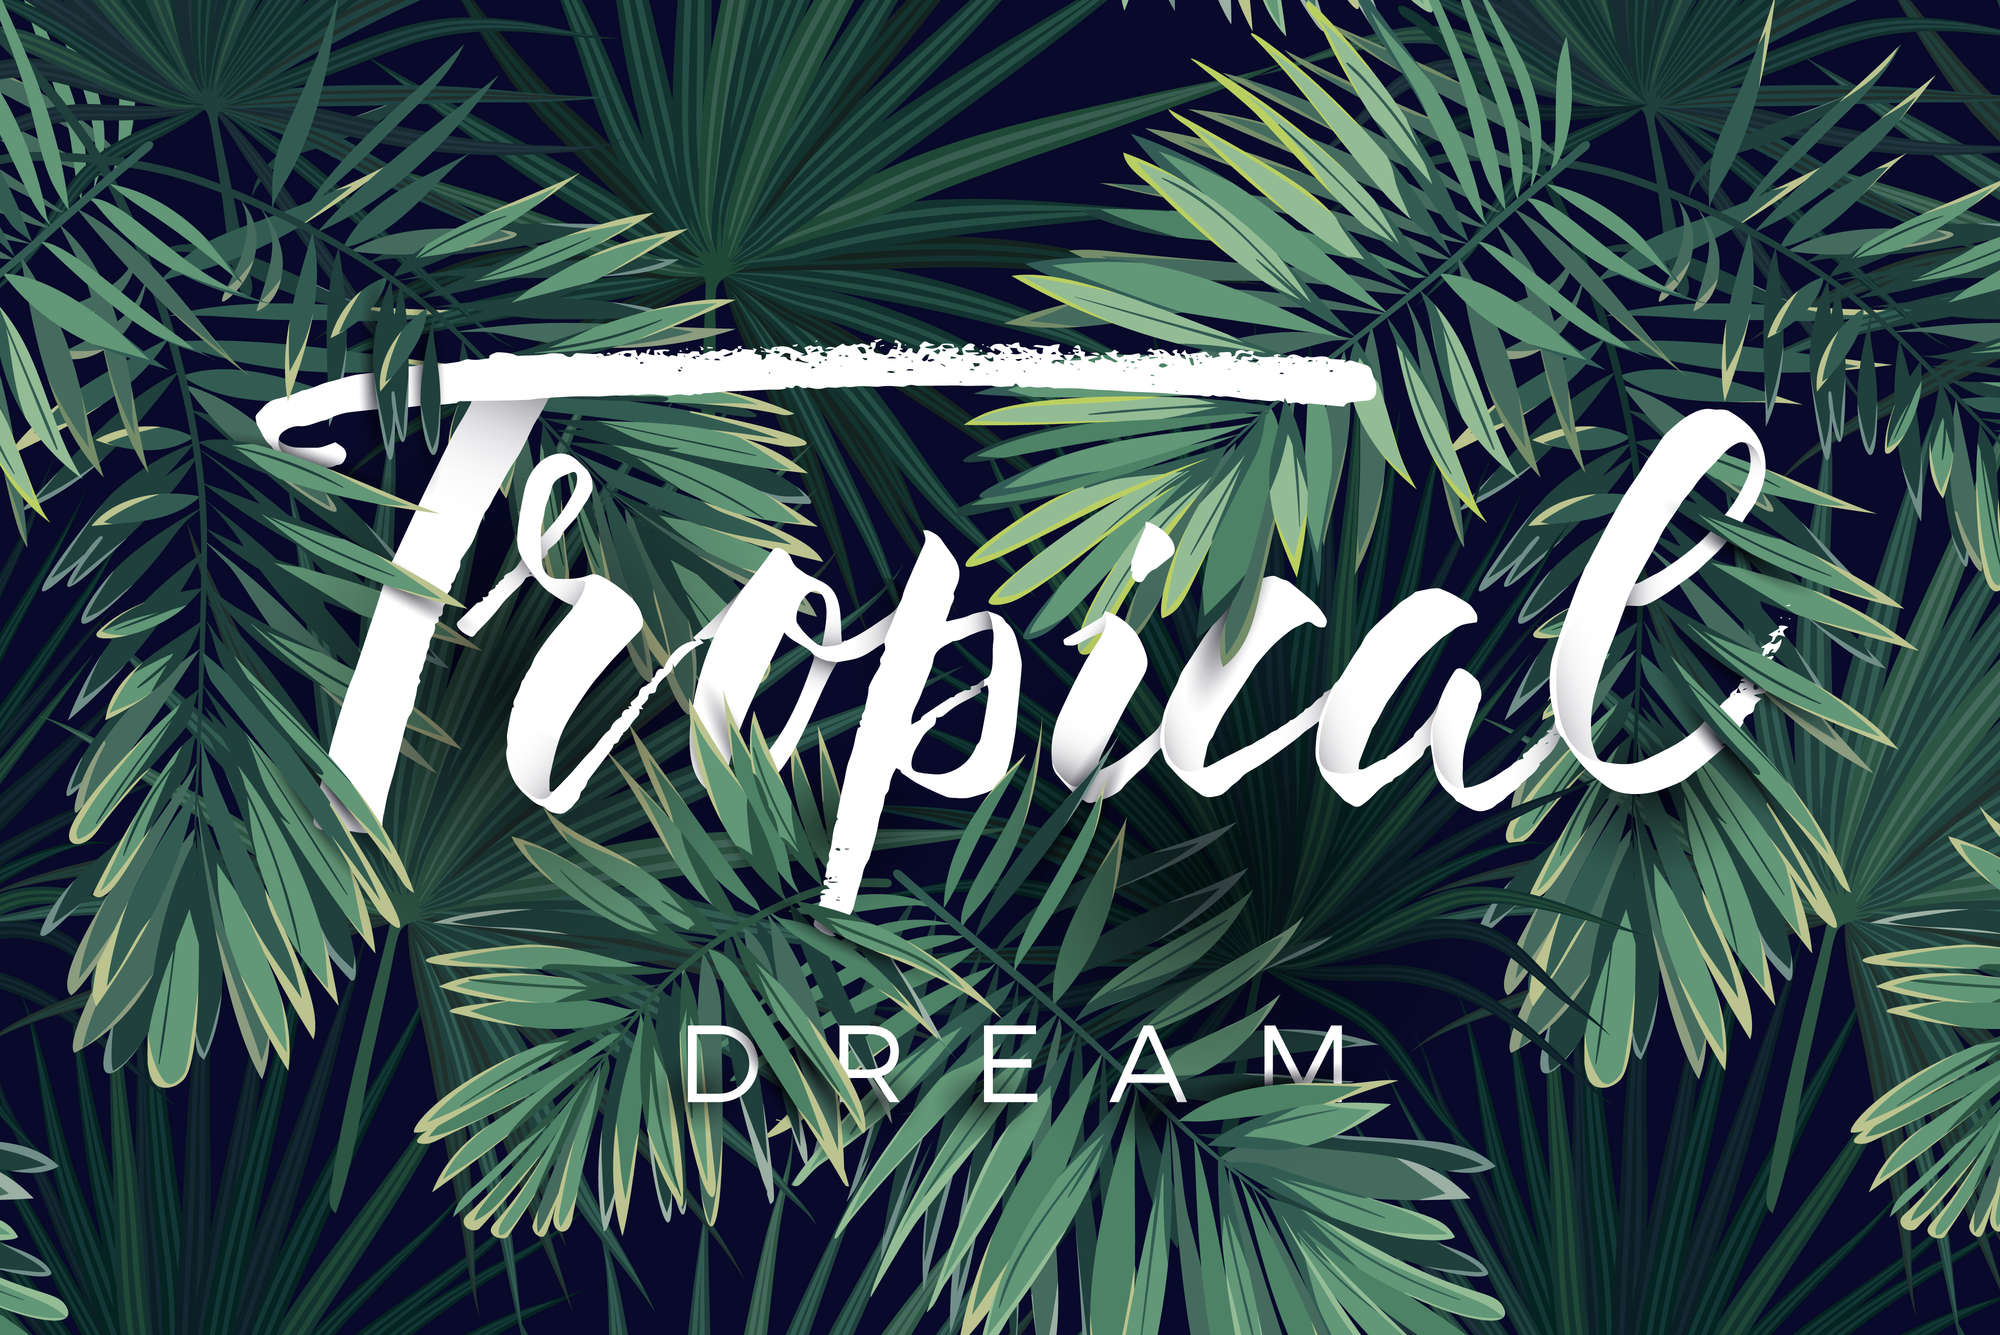             Grafisch behang "Tropical Dream" belettering op mat glad vlies
        